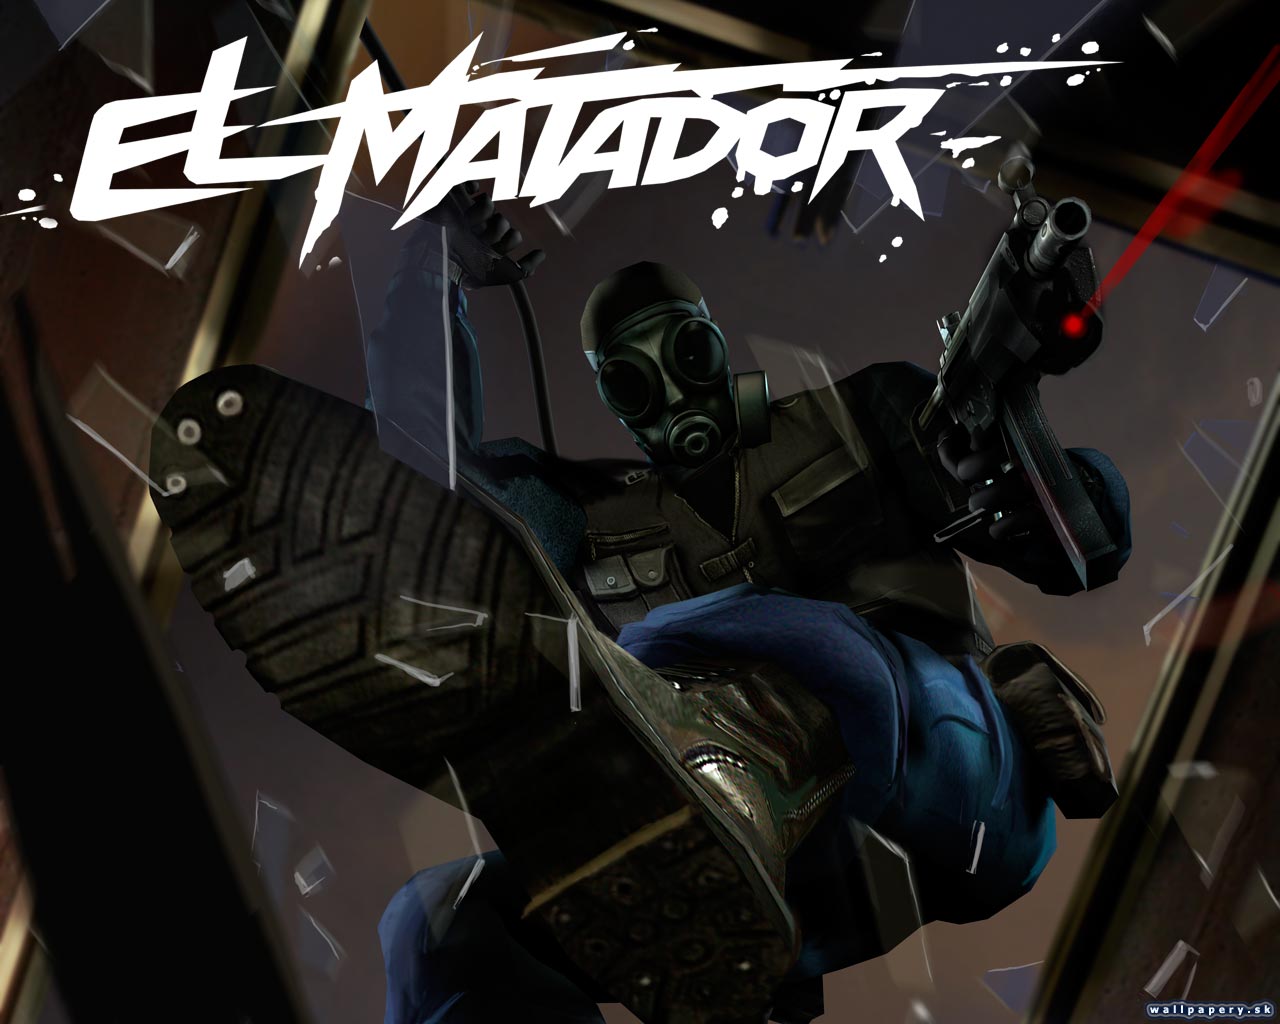 El Matador - wallpaper 18